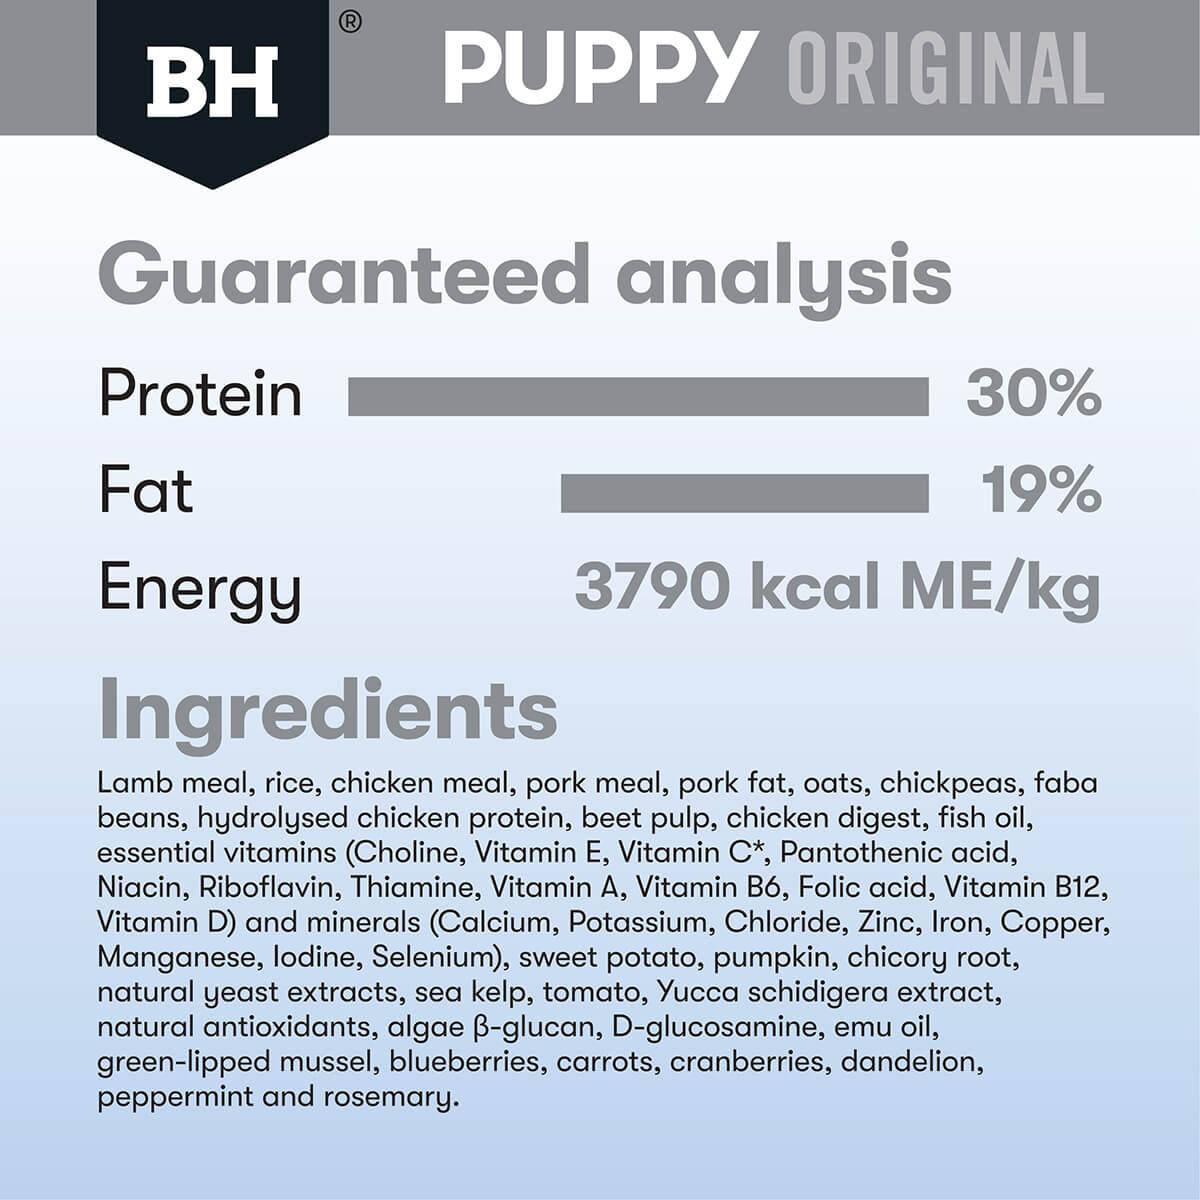 Black Hawk Puppy Lamb & Rice Small Breed Dry Dog Food